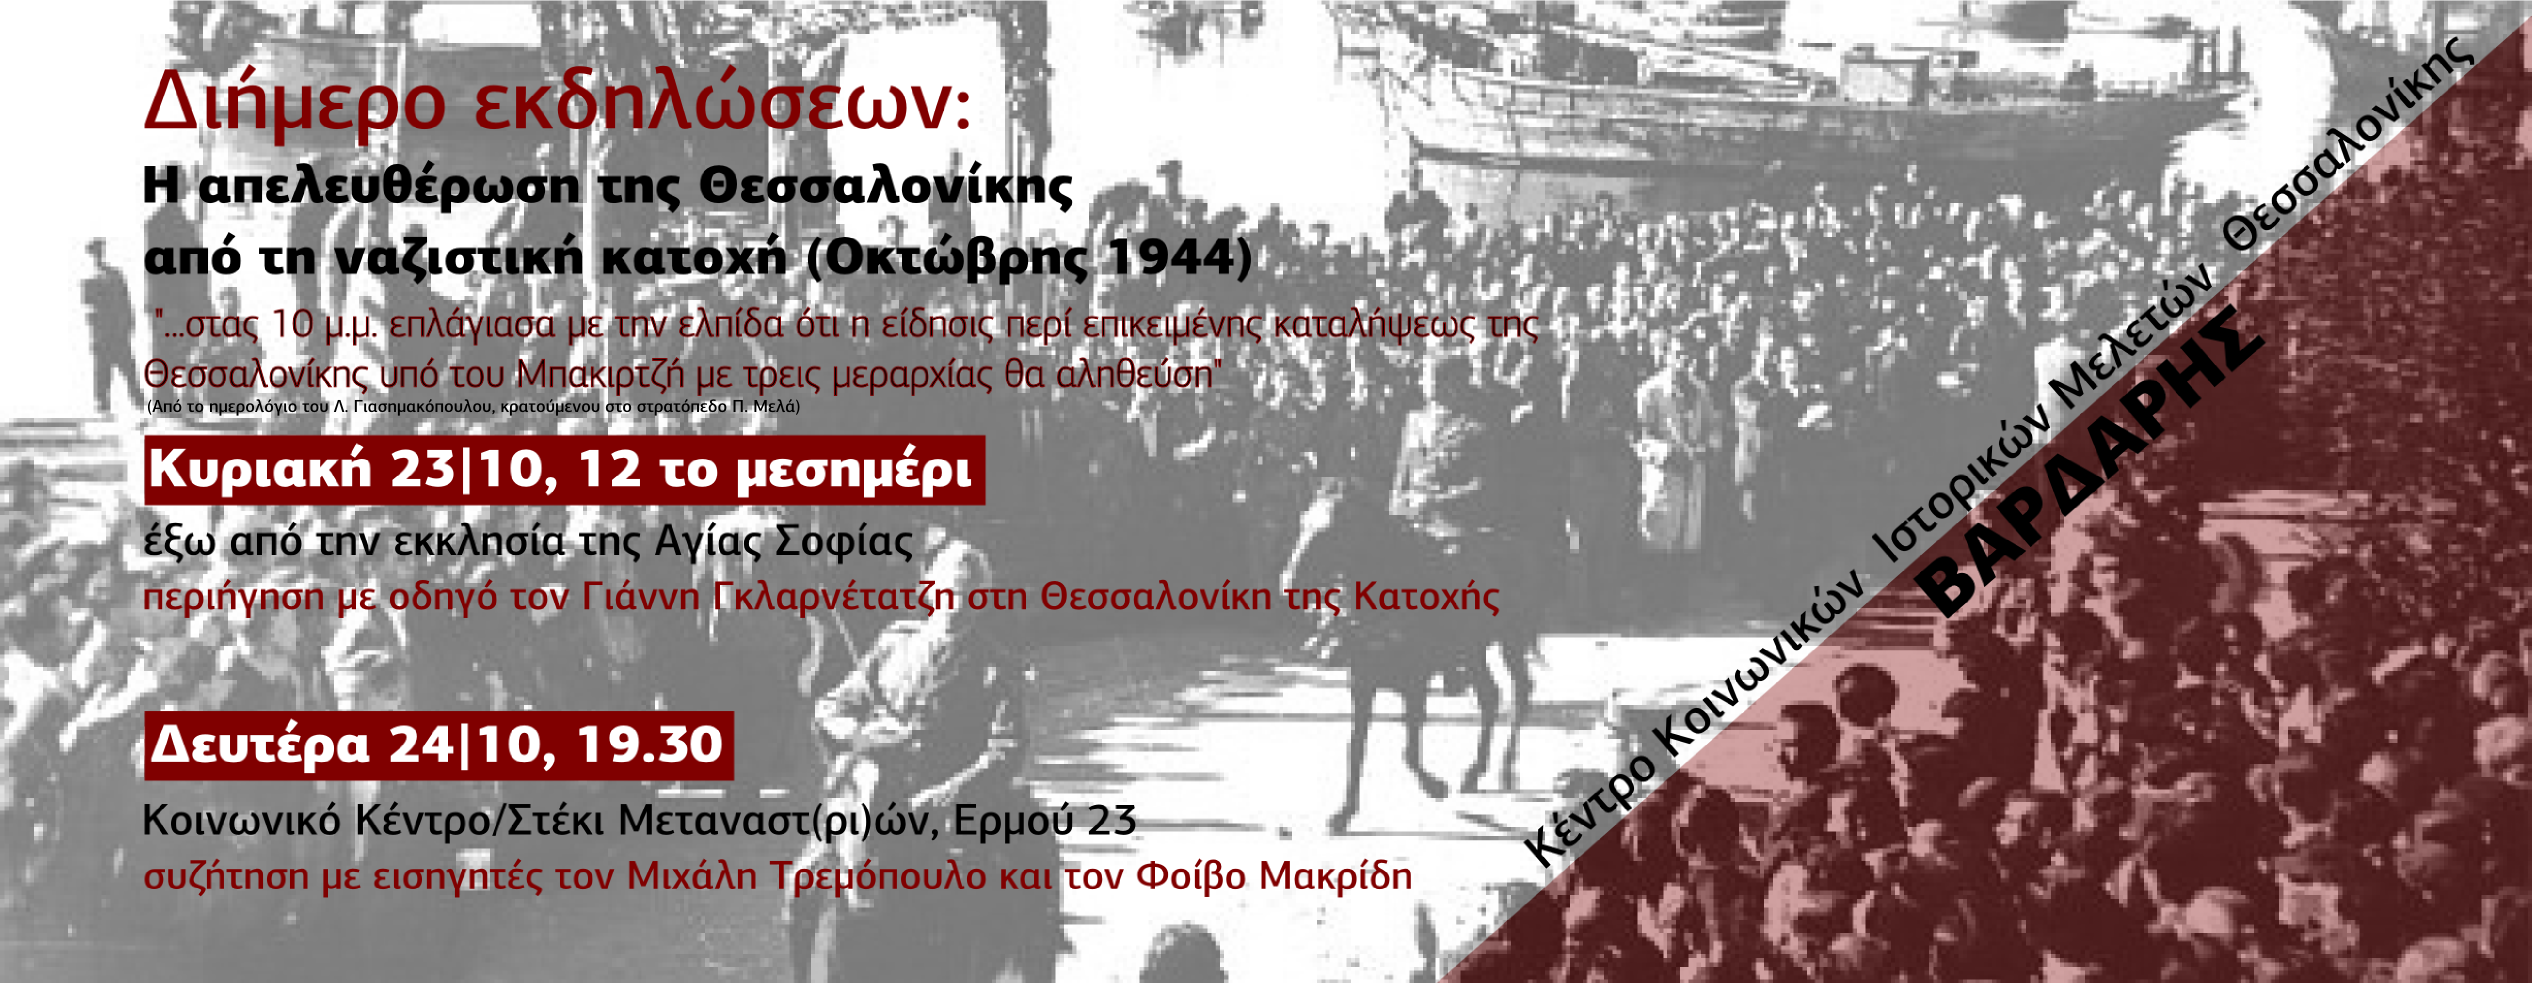 Διήμερο εκδηλώσεων για την απελευθέρωση της Θεσσαλονίκης (Οκτώβρης 1944)